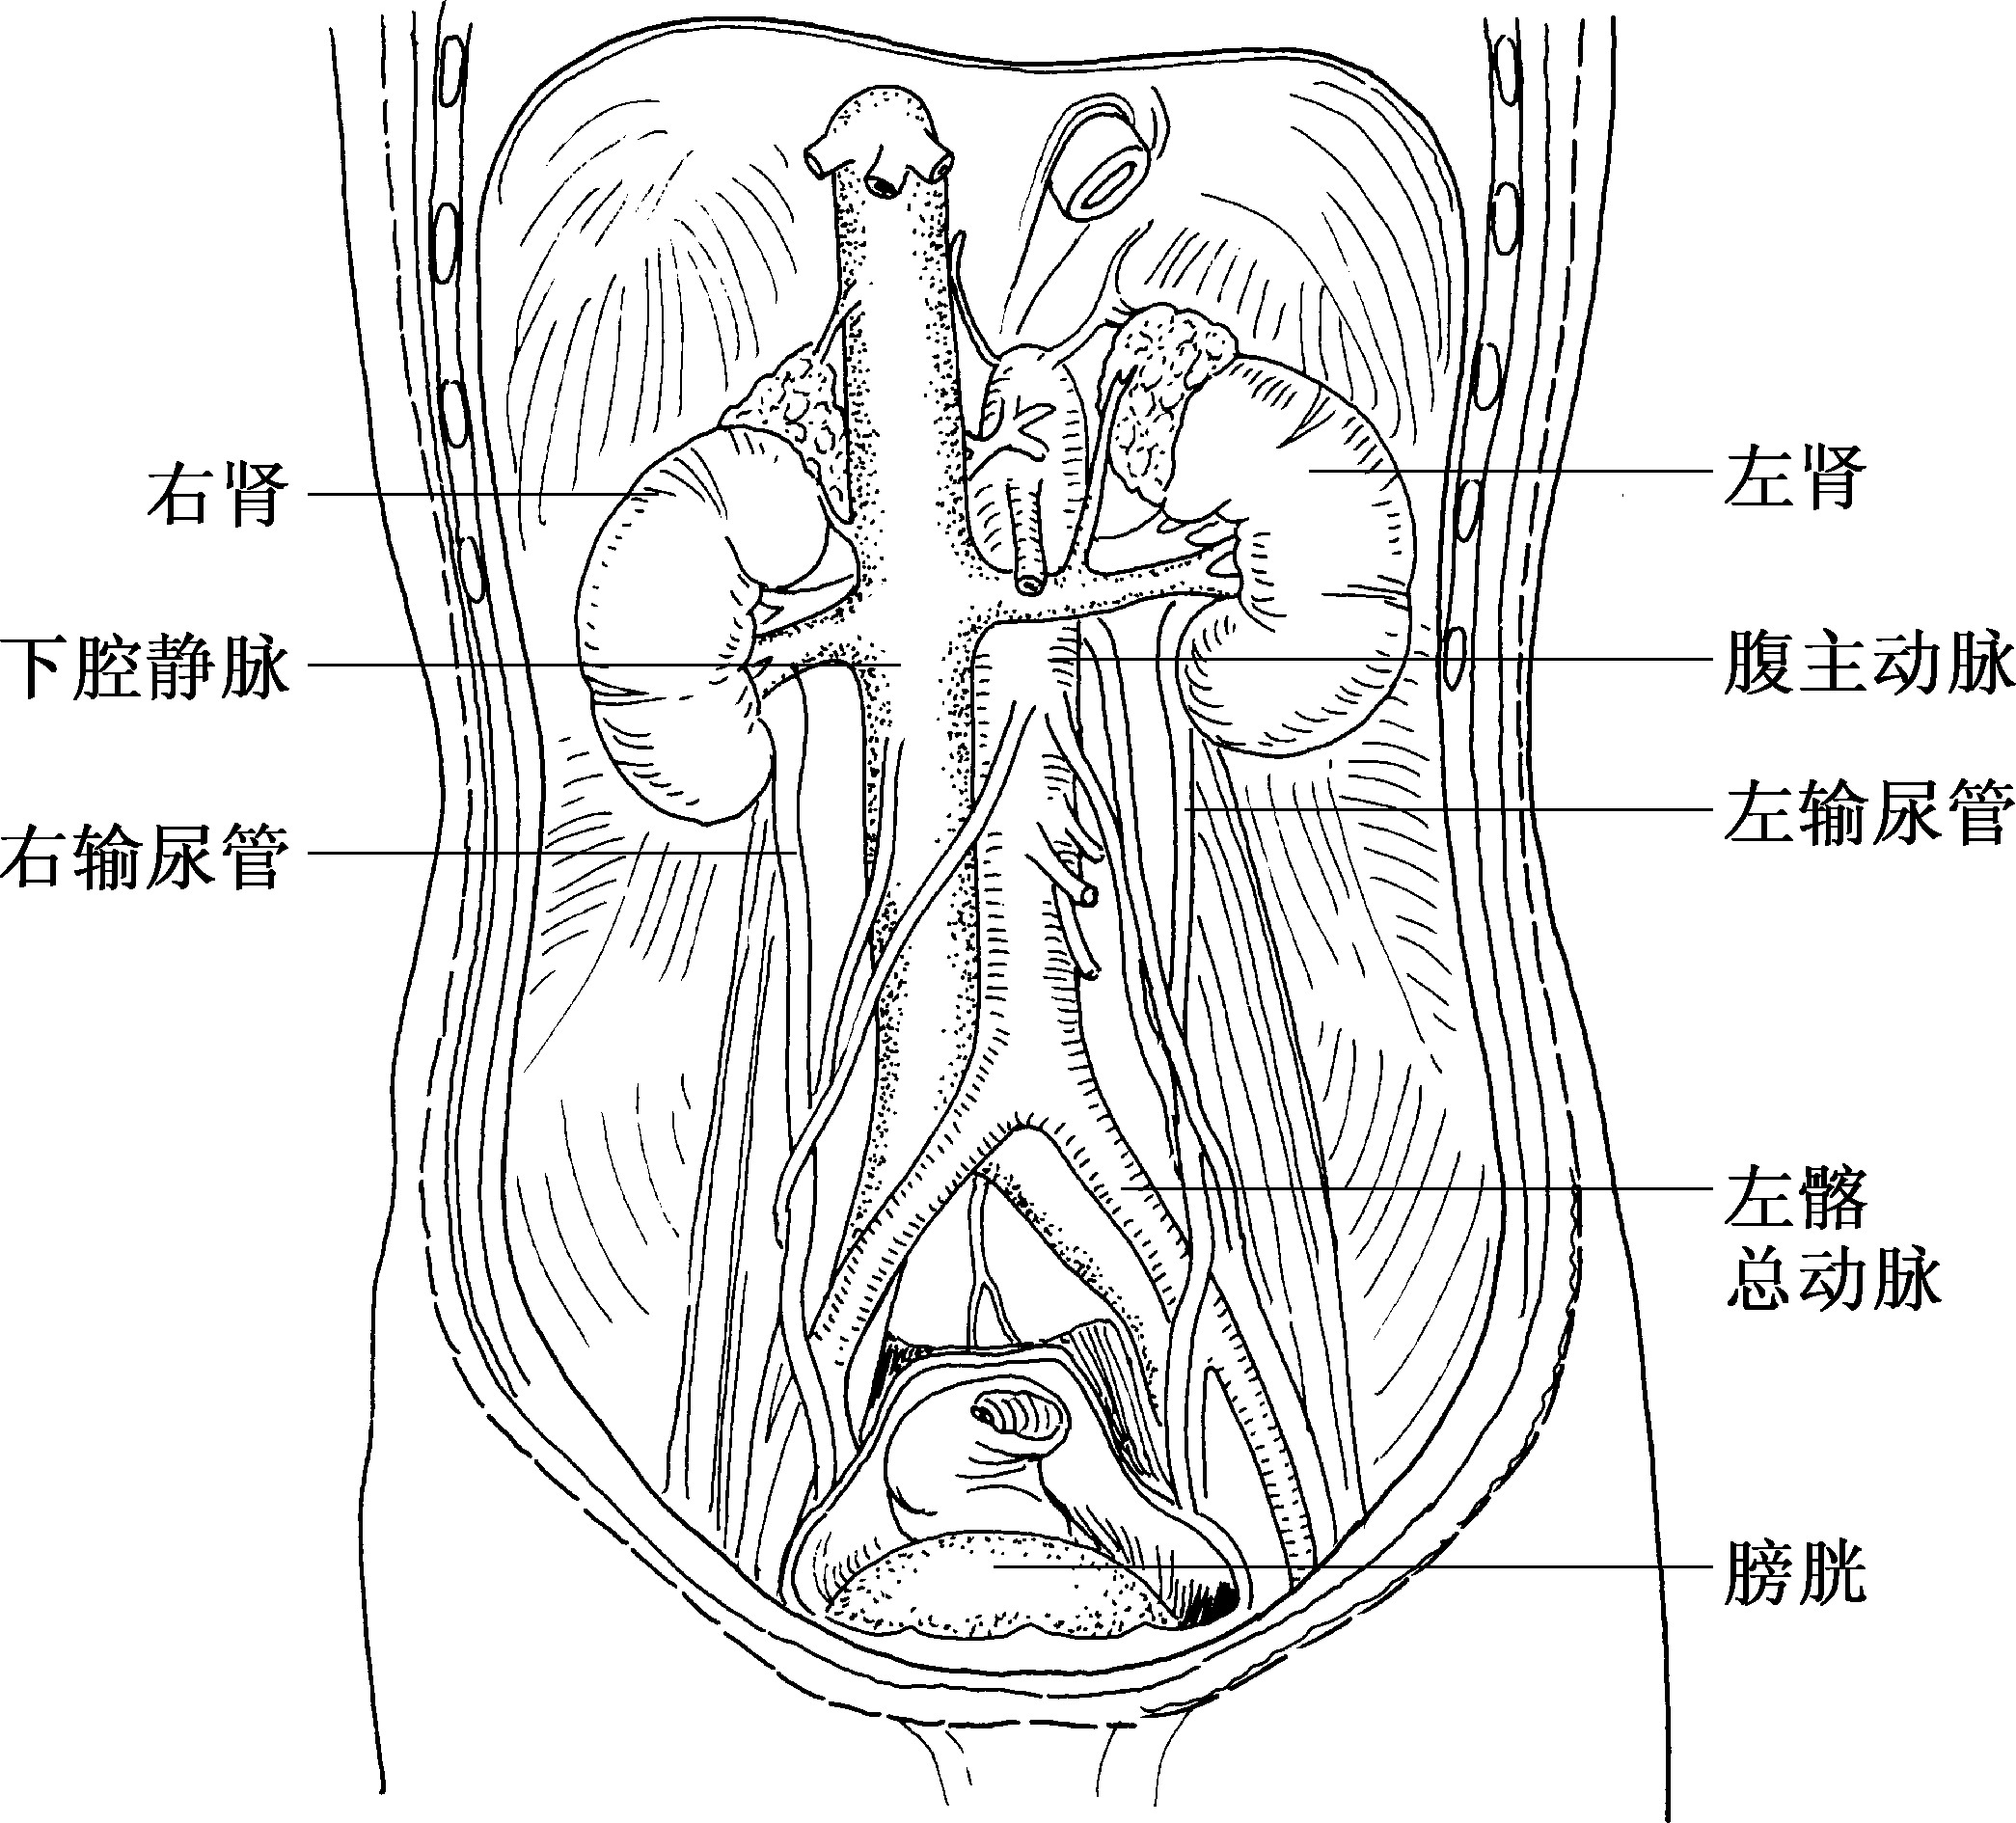 男性病人留置導尿管之居家照護 | 臺北榮總護理部健康e點通